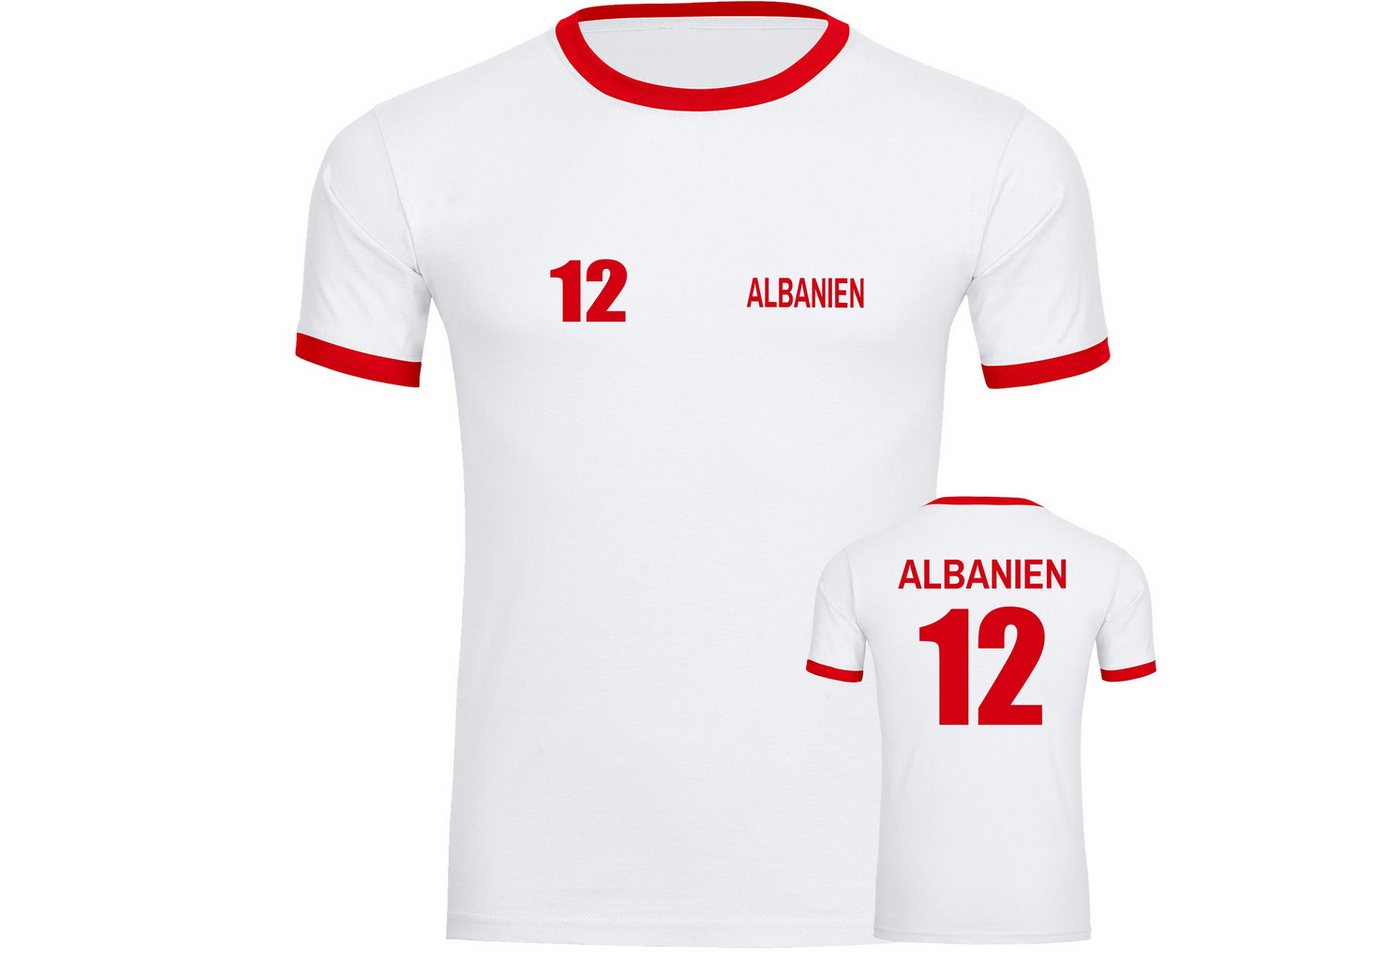 multifanshop T-Shirt Kontrast Albanien - Trikot 12 - Männer von multifanshop